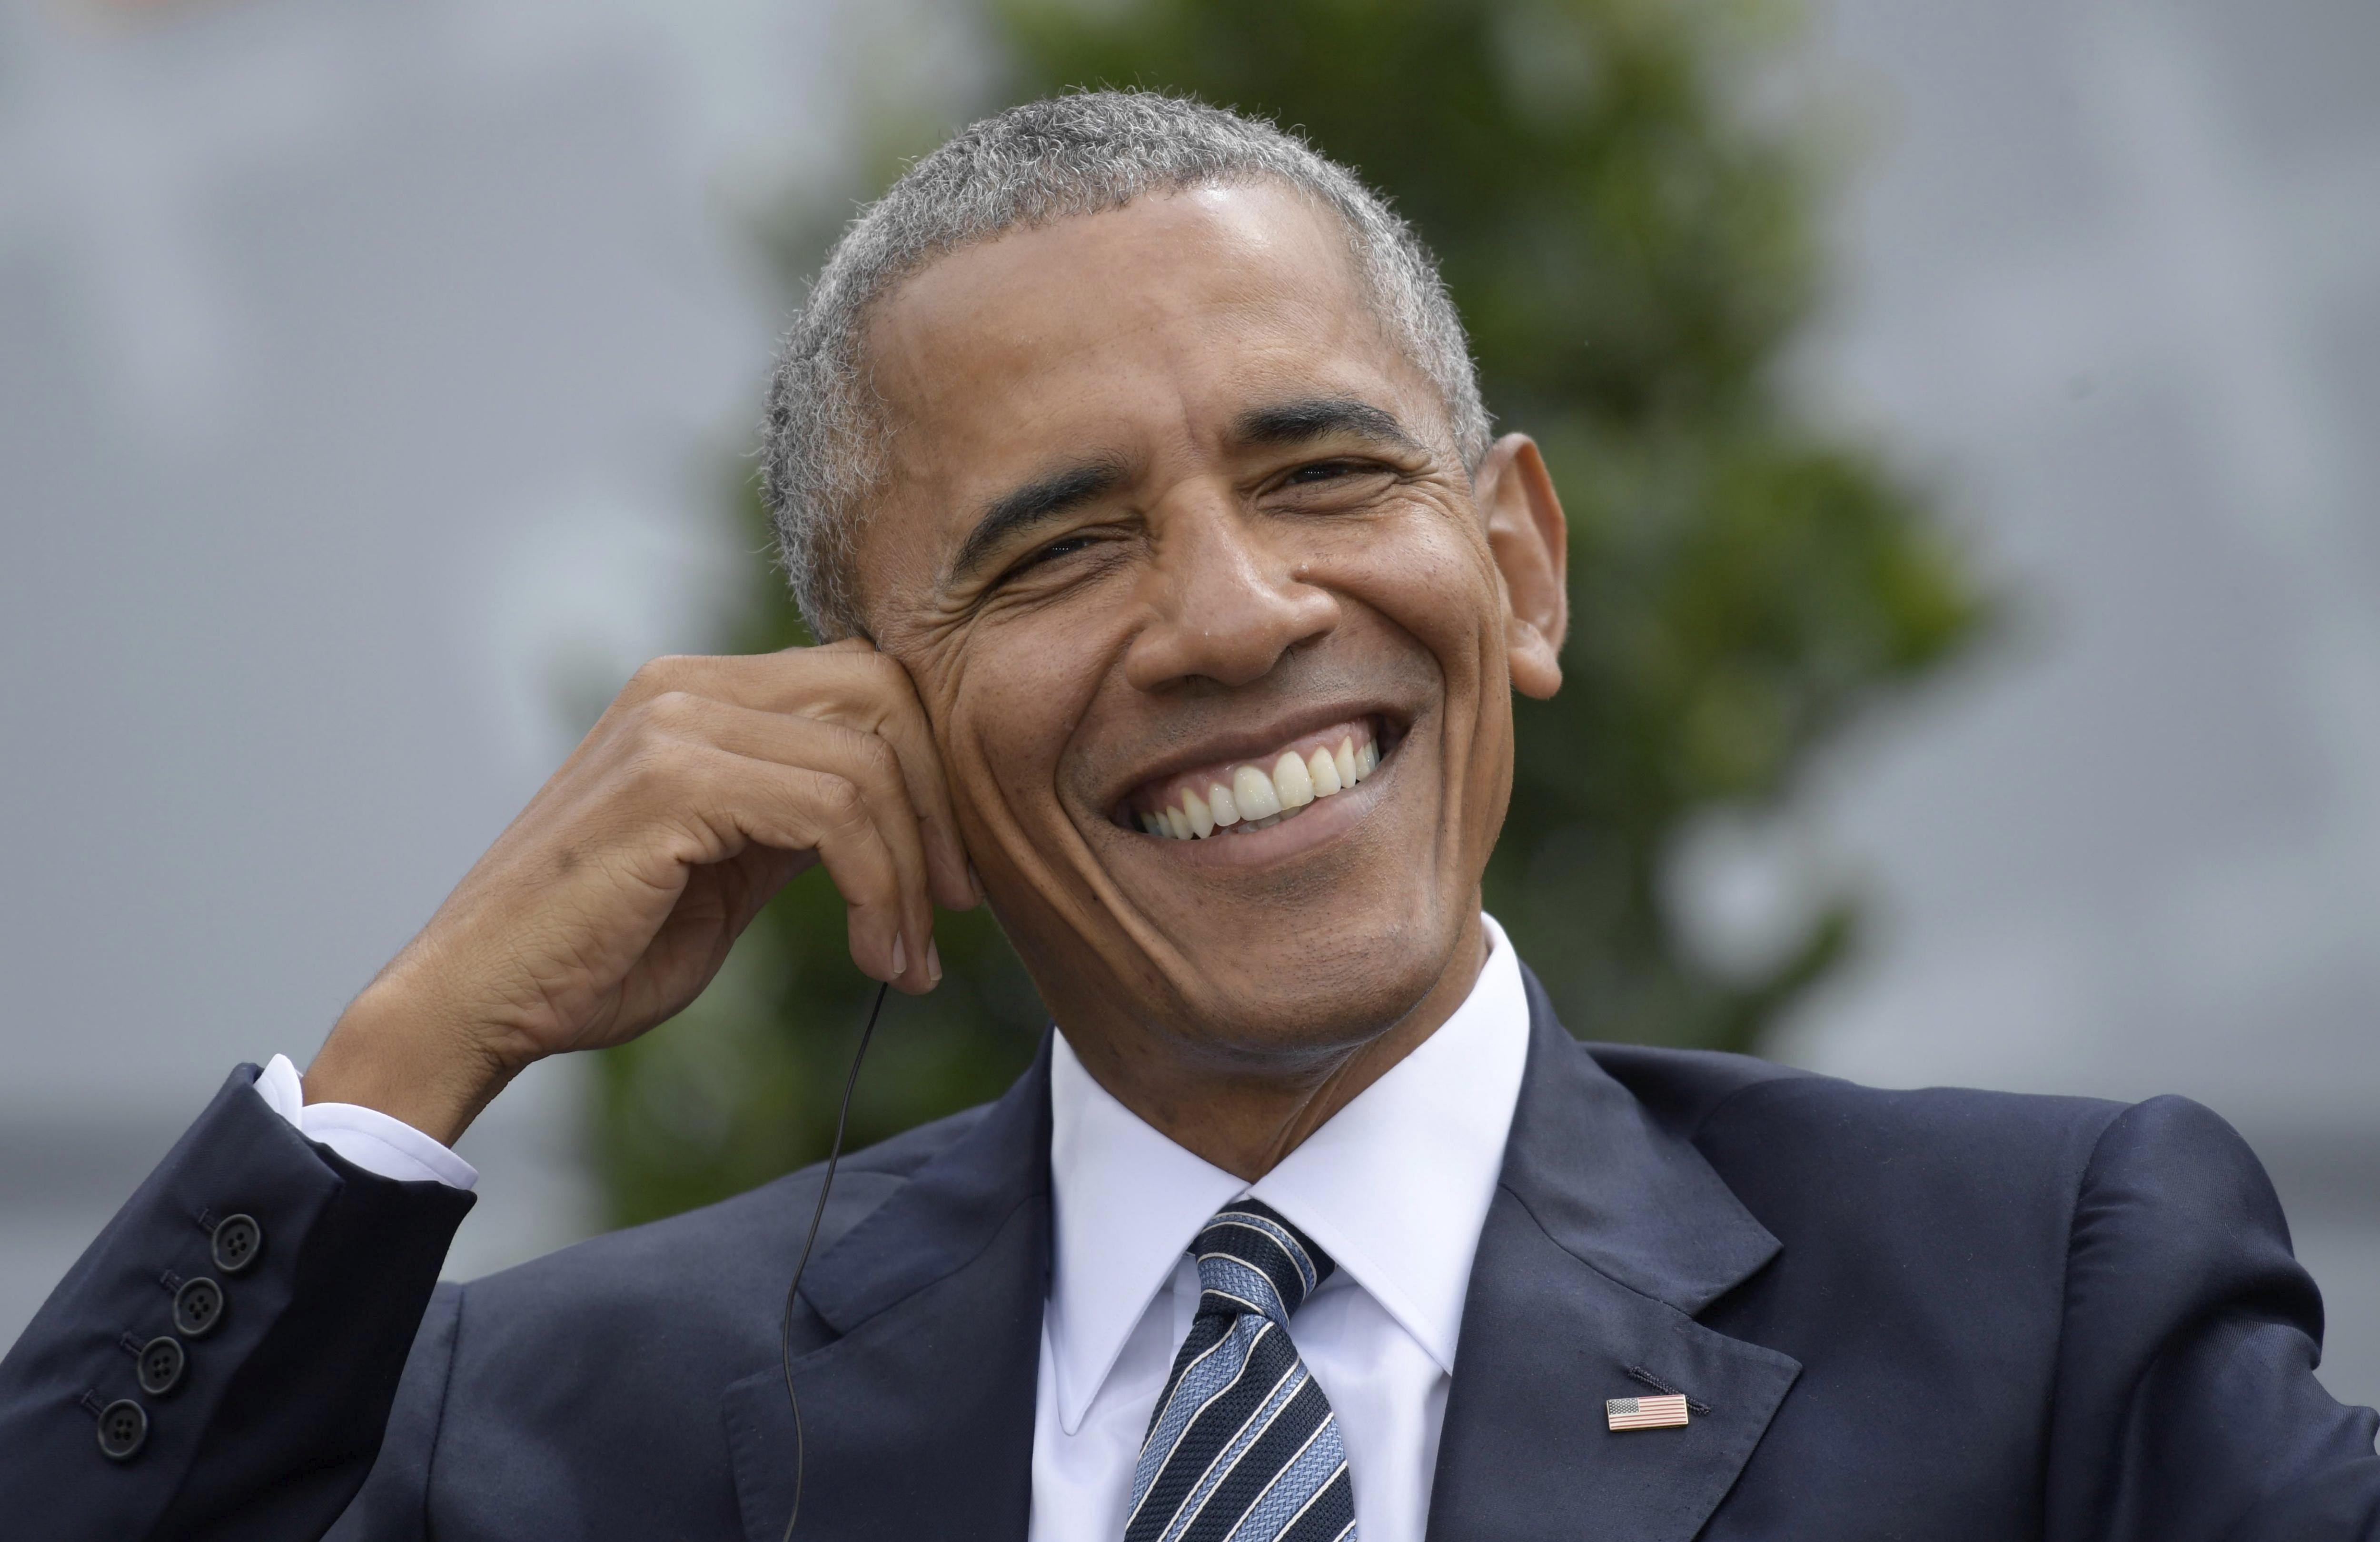 Els Obama es compren una espectacular mansió de 7 milions d’euros